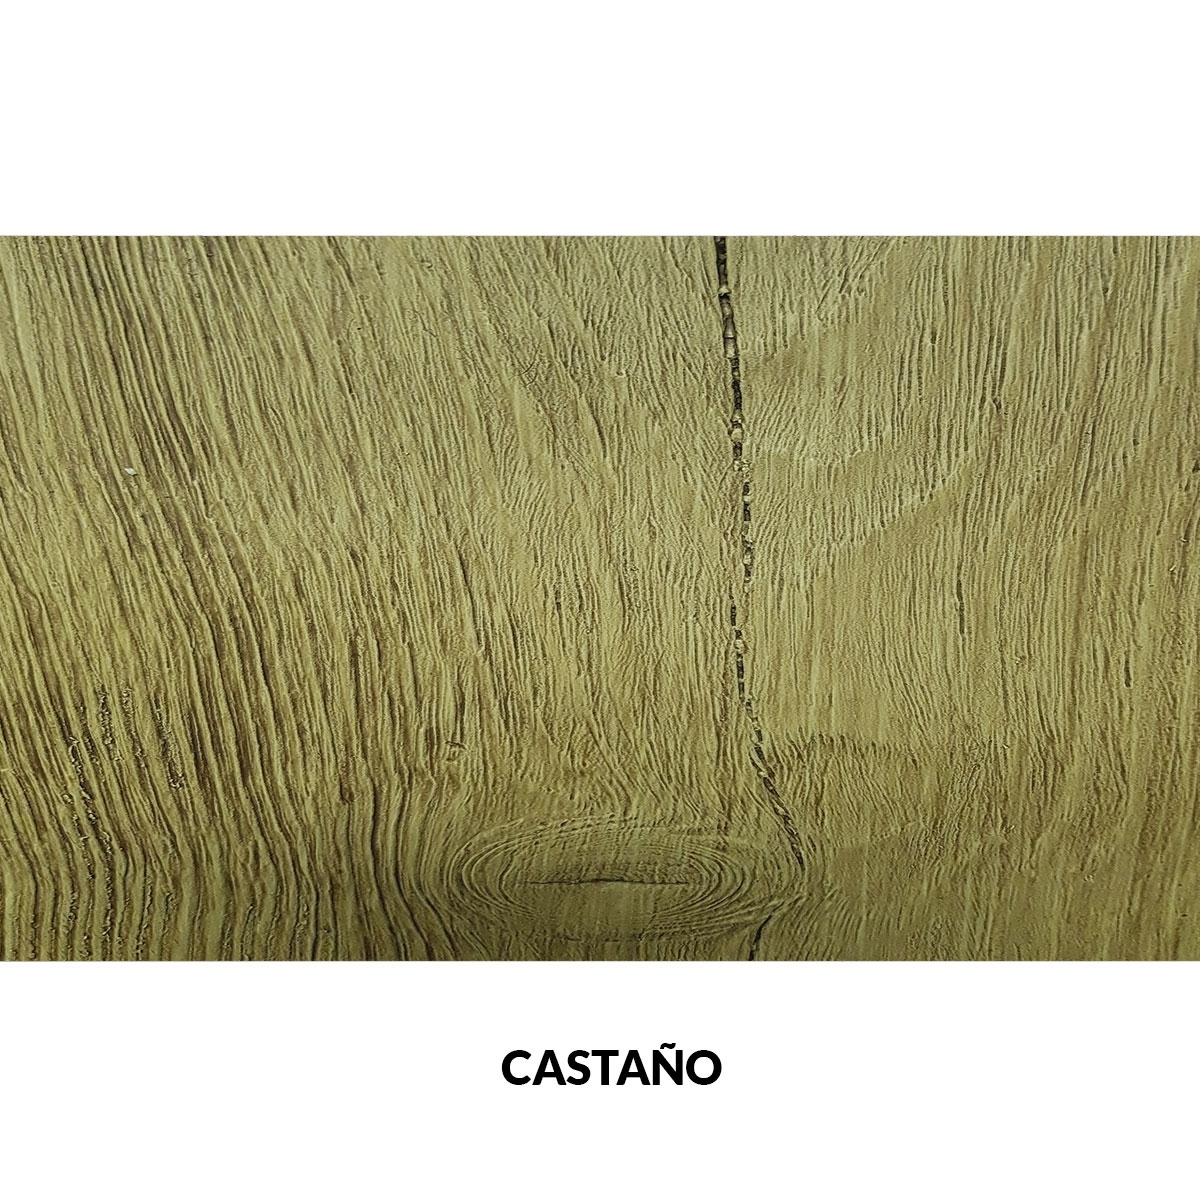 Painel rústico de imitação de madeira de castanheiro de 300x62cm sem ripas